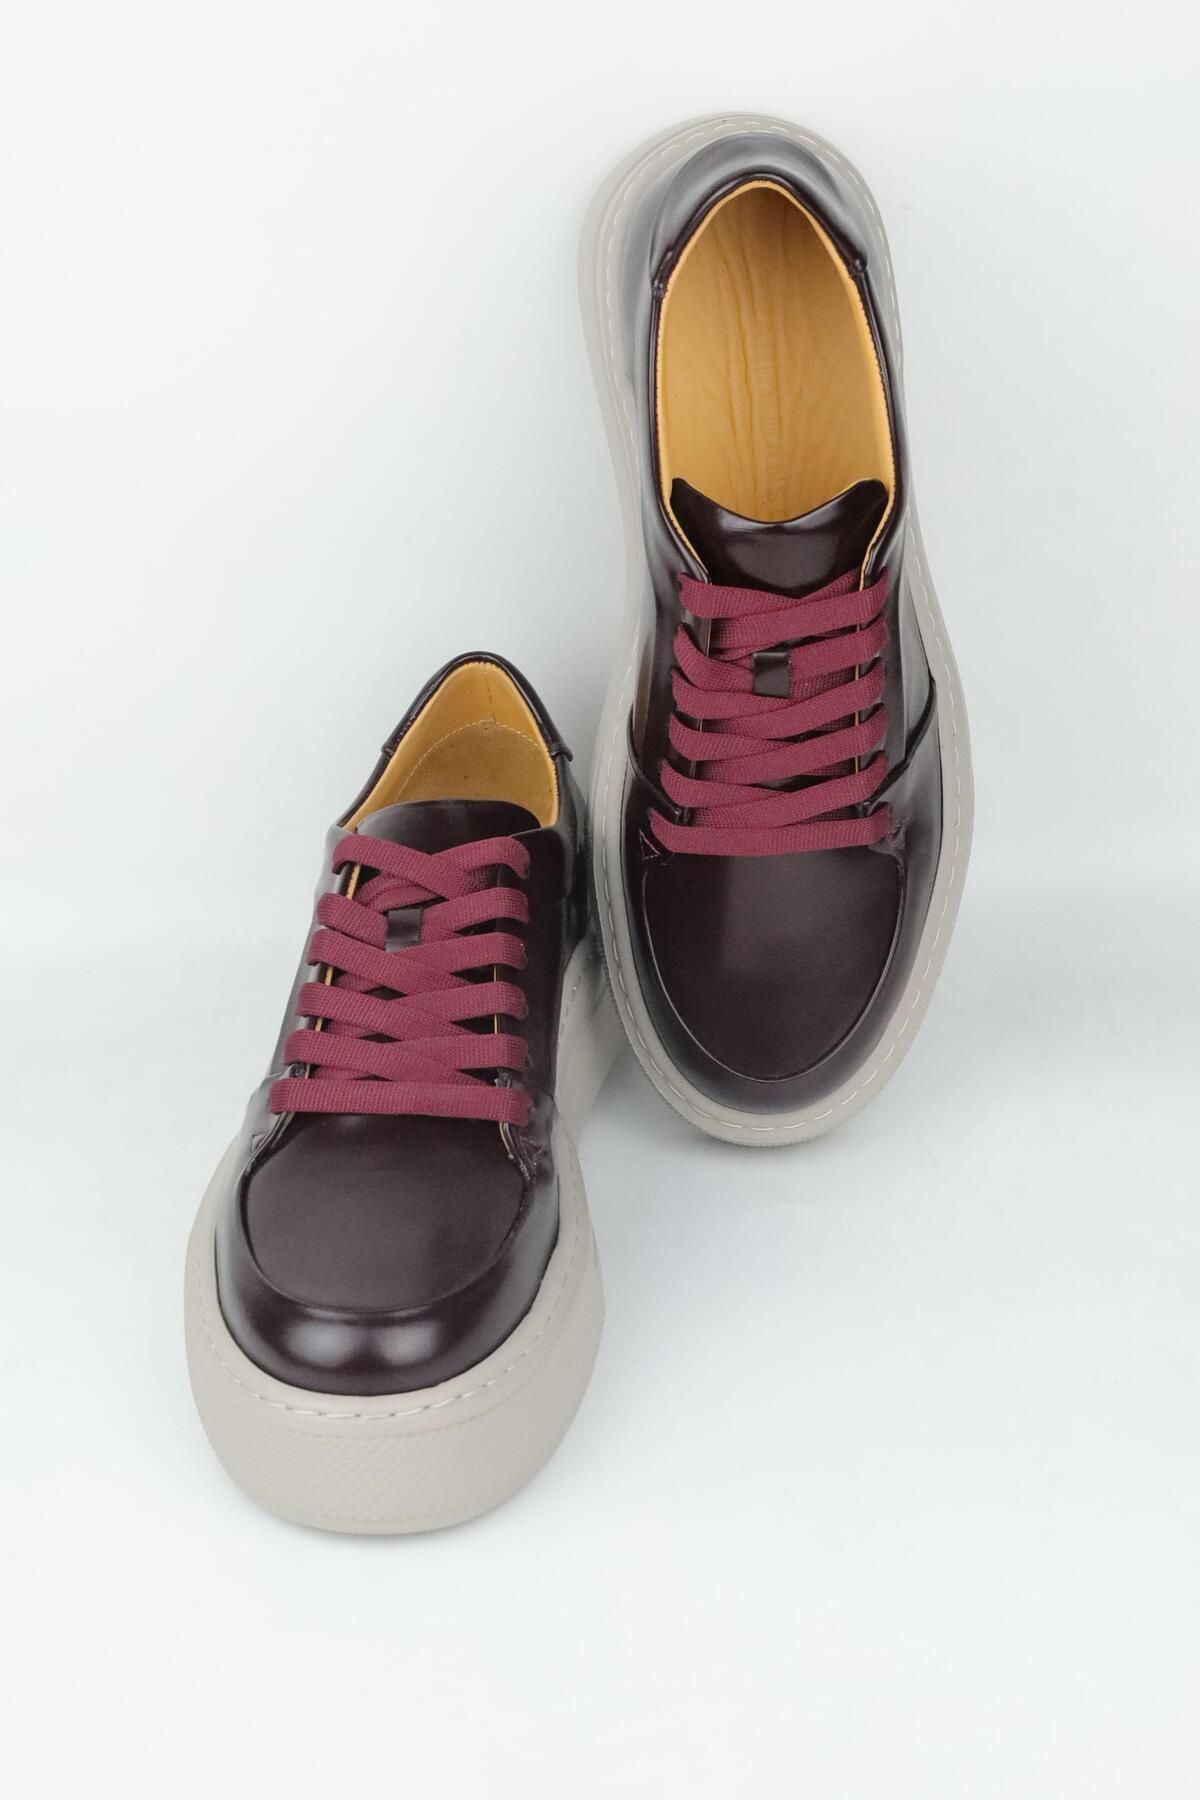 HARRY MANSON Model 086 Hakiki Açma Deri Erkek Günlük Ayakkabı